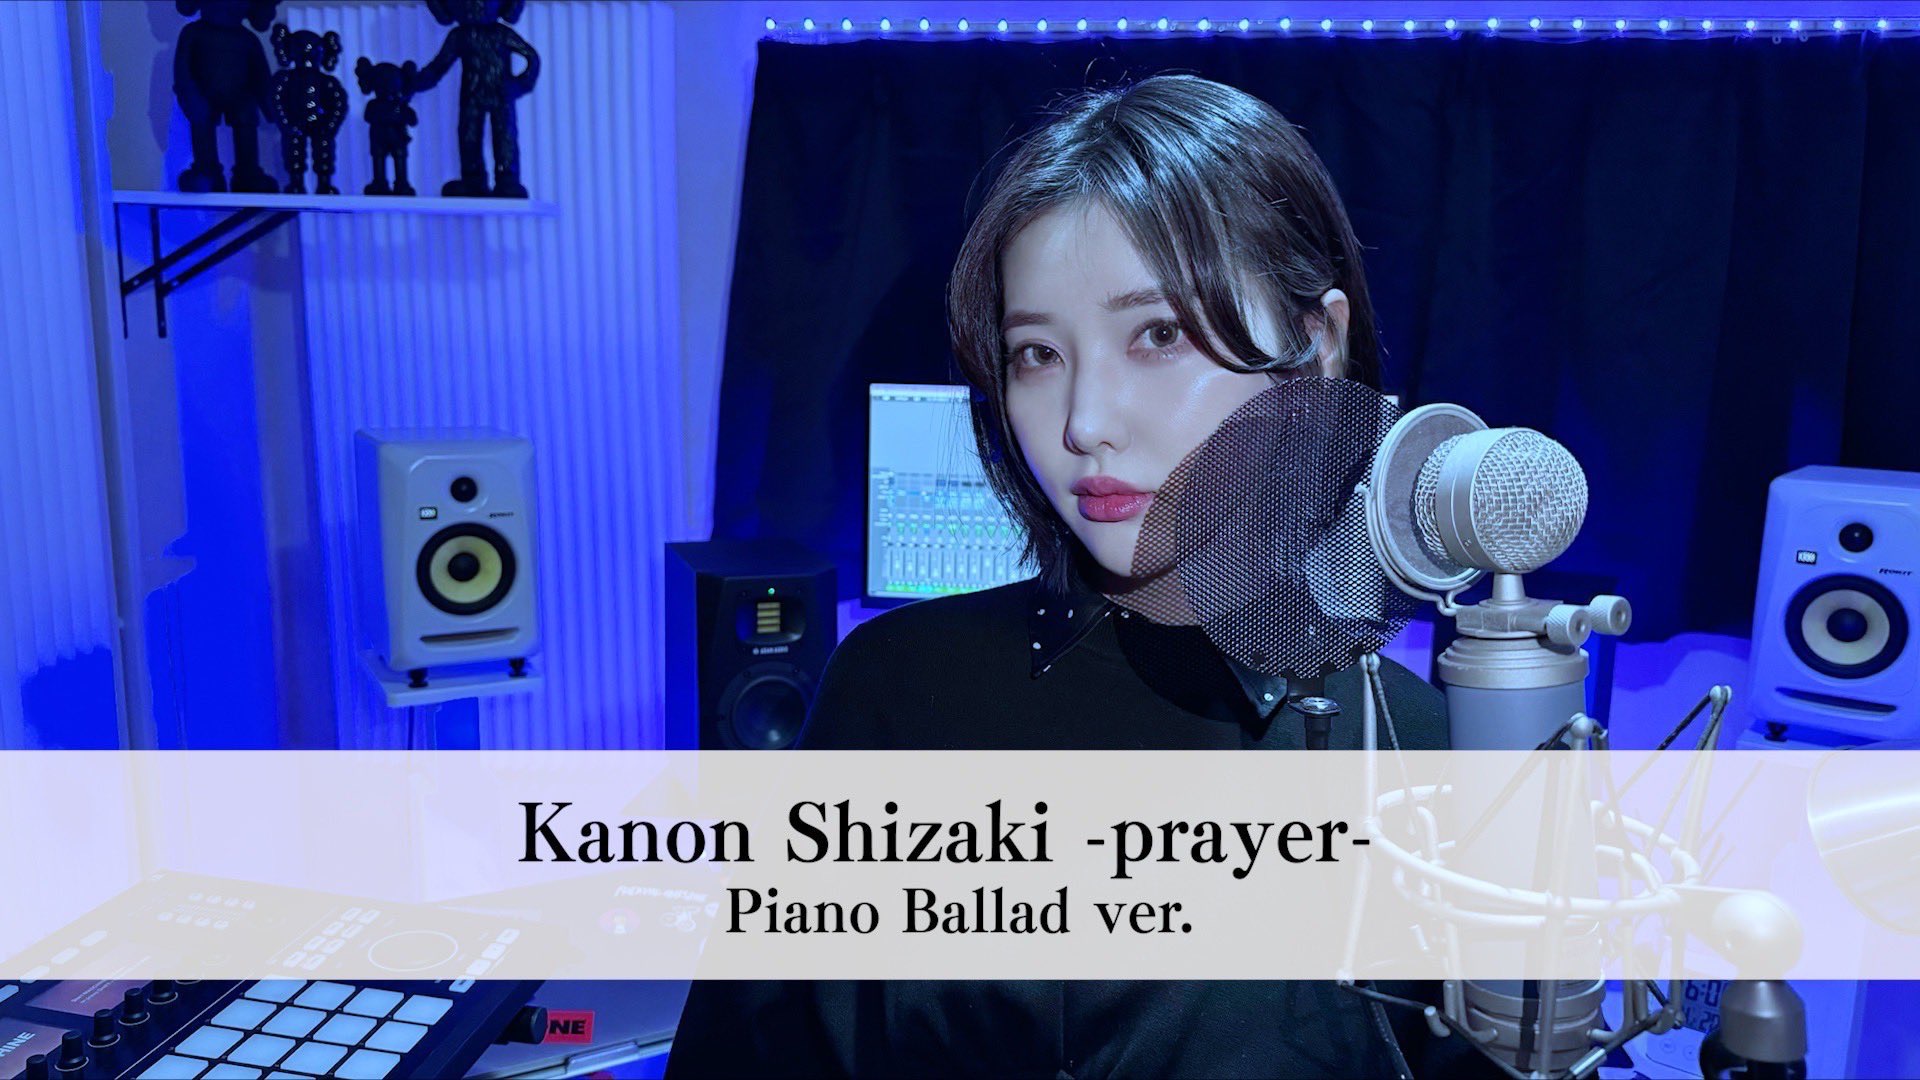 prayer ⧸ Kanon Shizaki (Piano Ballad ver. ⧸ self cover)